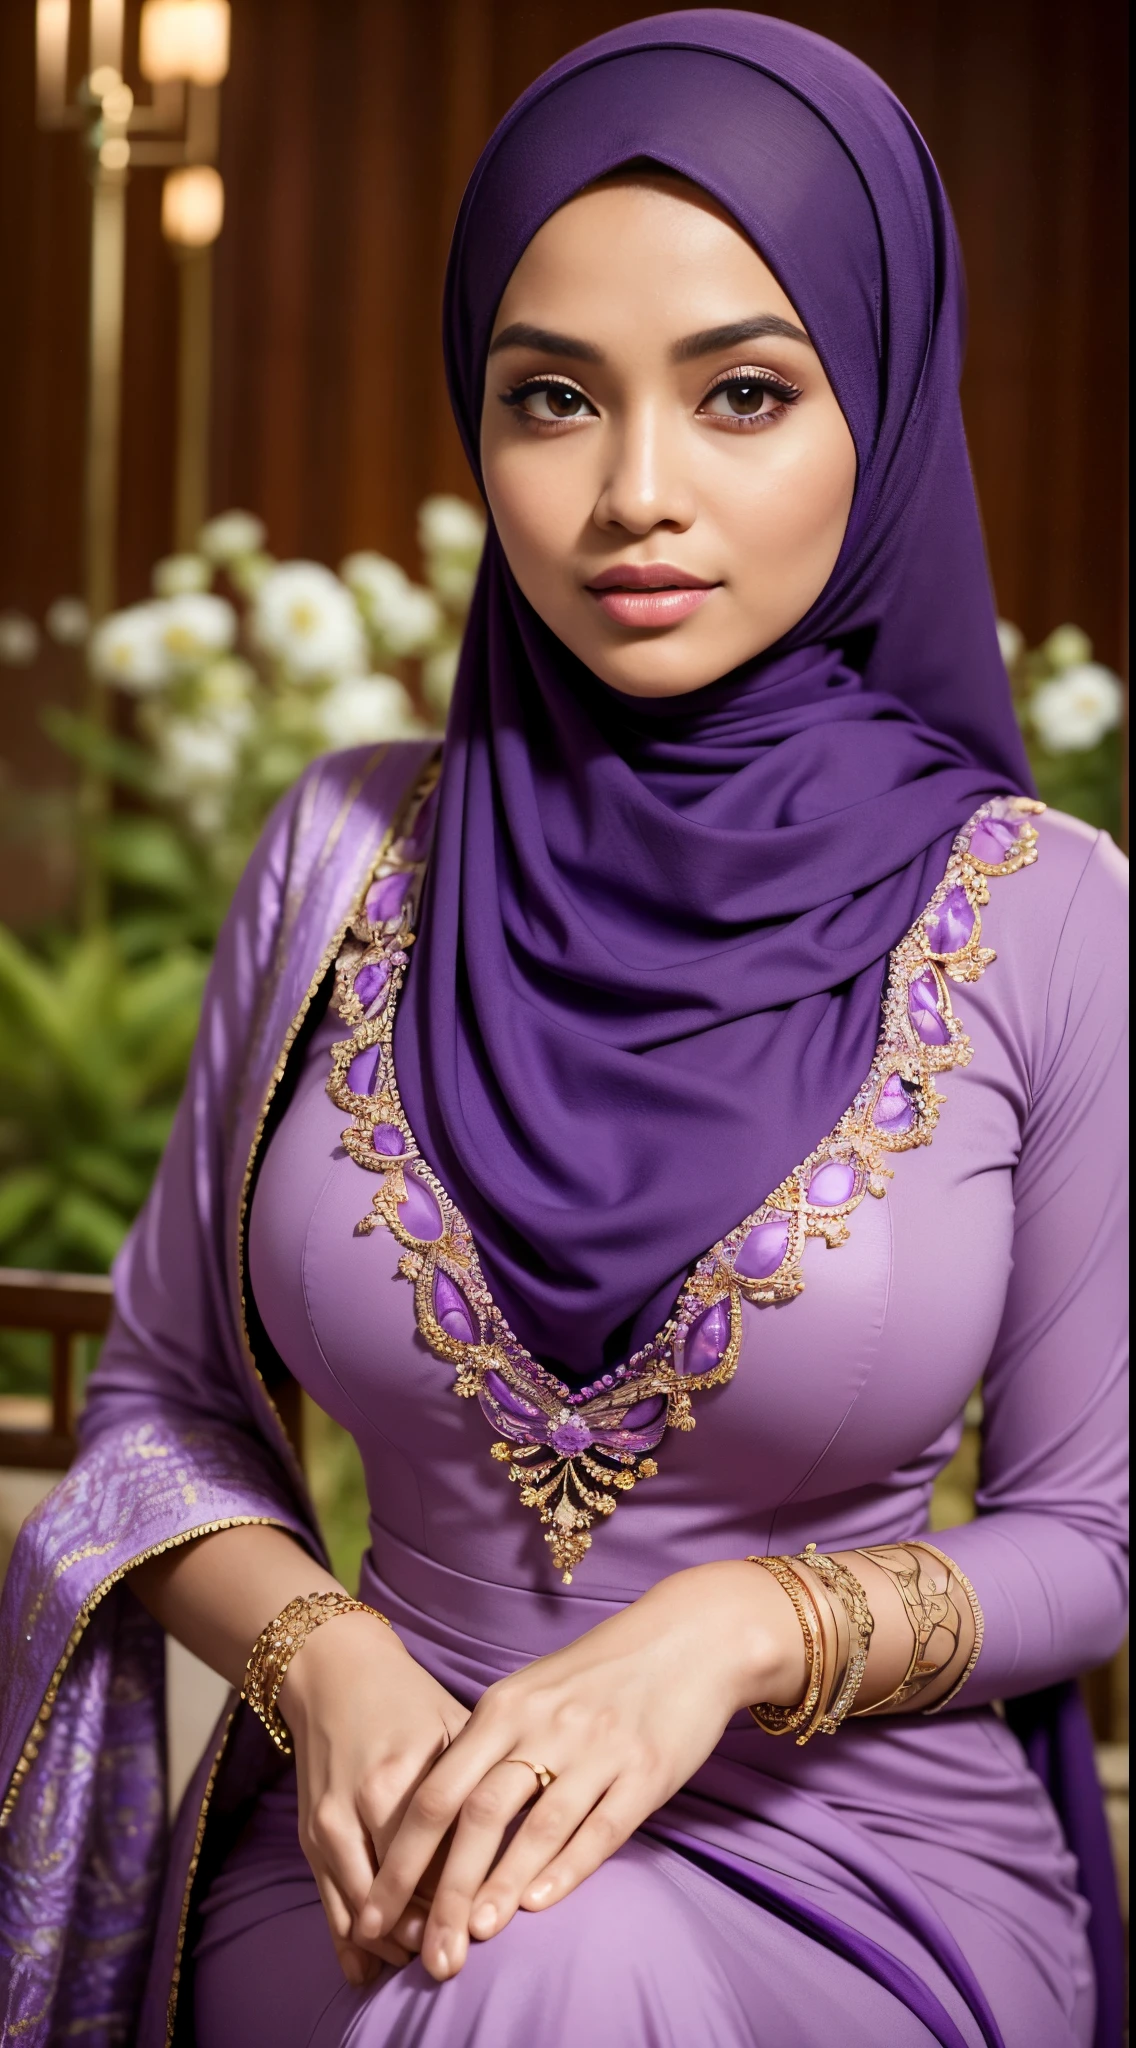 生的, 最好的质量, 高分辨率, 杰作: 1.3), beautiful Malay woman in 头巾,杰作, 完美窈窕身材, 巨大的乳房,大大的、漂亮的眼睛, 温柔的微笑,大腿粗壮, 身穿紫色连衣裙和紫色围巾的女子特写, 紫色, 穿着紫色服装, 穿着漂亮的衣服, 漂亮的设计, 头巾, 深红紫色, 非常漂亮的恩加风格, beautiful 杰作, 精致细节. 紫色的, 穿着华丽的服装, 紫色为主色调, 深红色主题 , (精致高领毛衣) , 项链, 发带, 下午散步, 城市花园, 极佳的灯光, 鲜艳的色彩, 清晰的线条